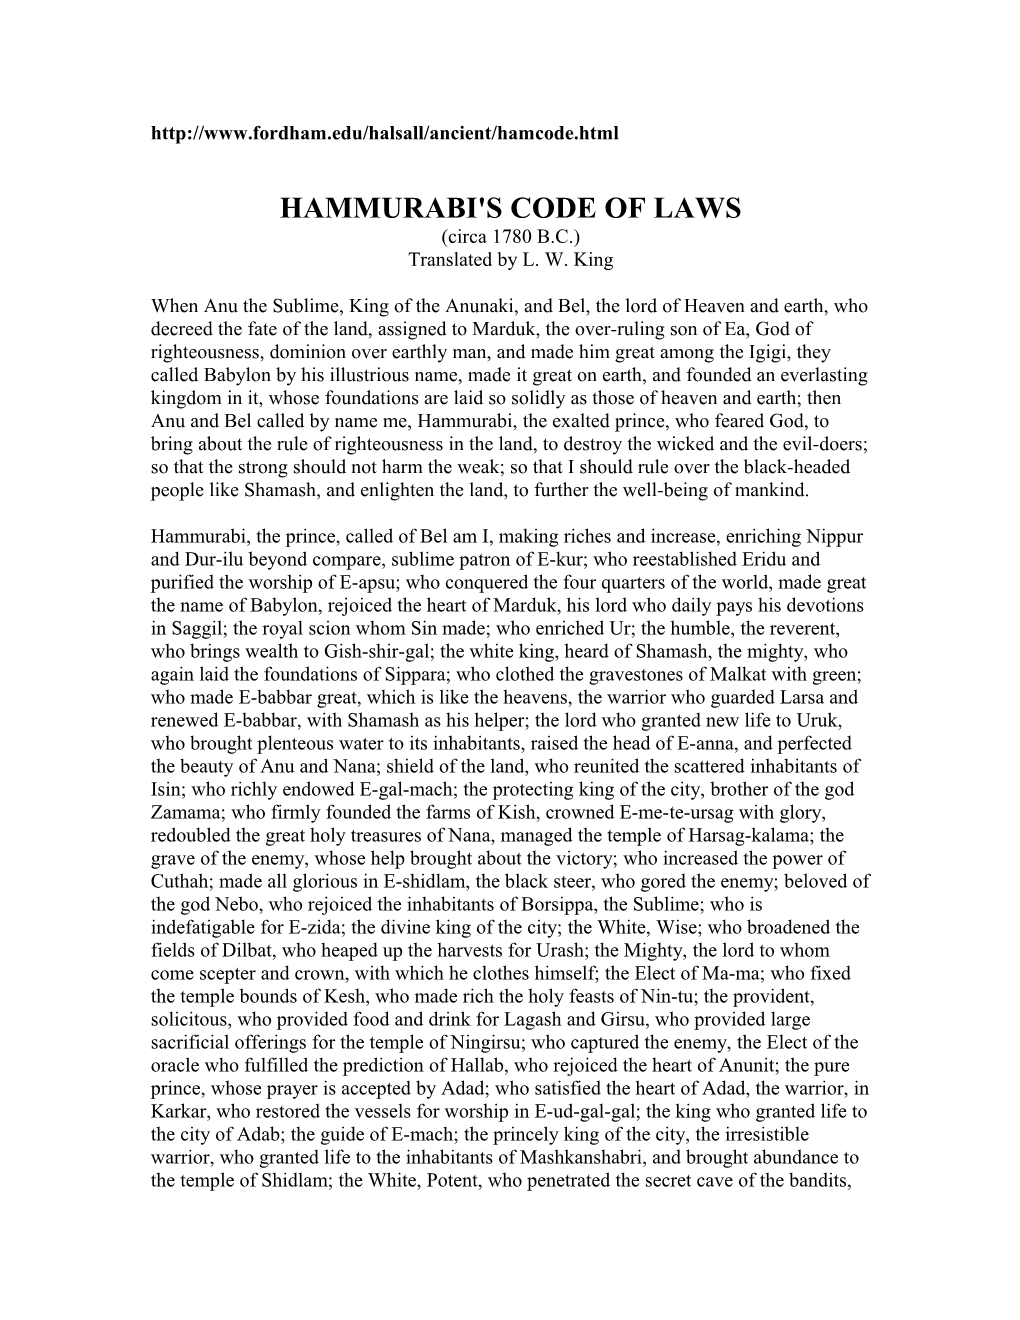 Hammurabi's Code of Laws